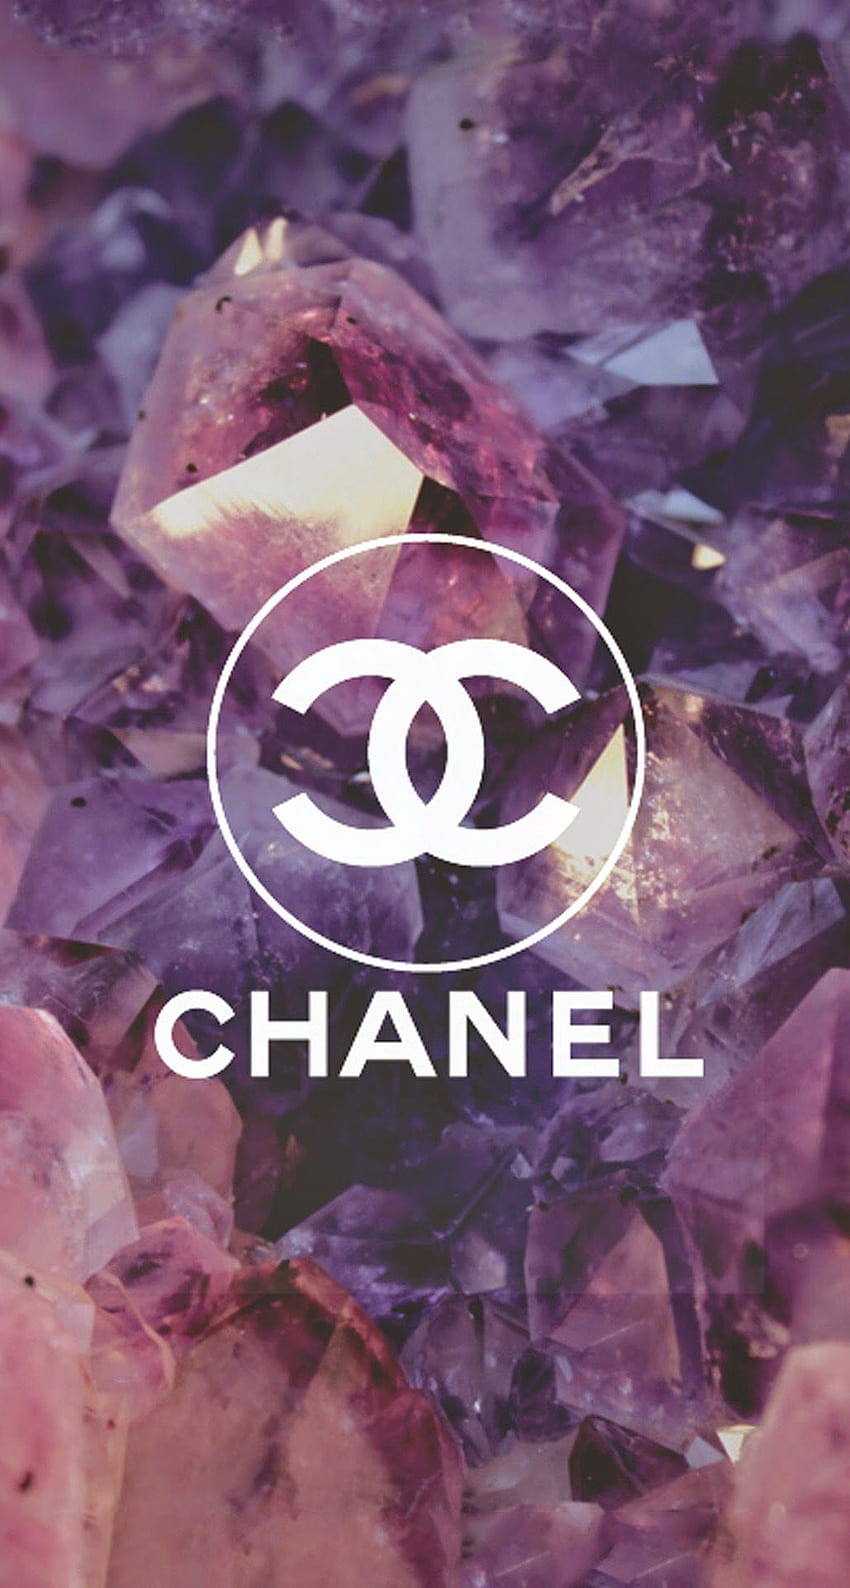 Coco Chanel Logo Diamonds iPhone 6 Plus Top 10 Brands iPhone Phone, luxury brands iphone HD phone wallpaper